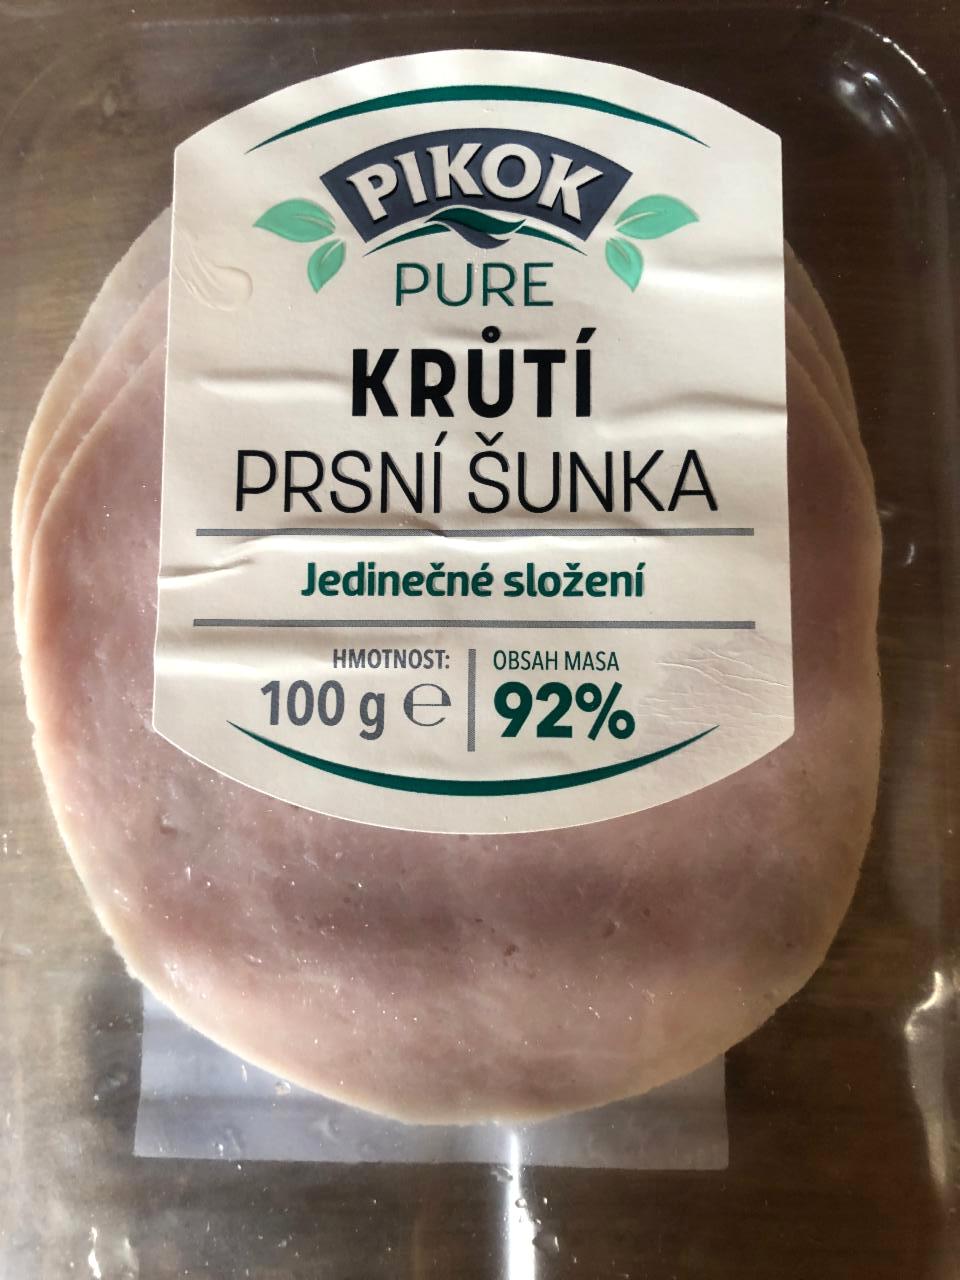 Fotografie - krůtí prsní šunka nejvyšší jakosti 92% masa pure Pikok